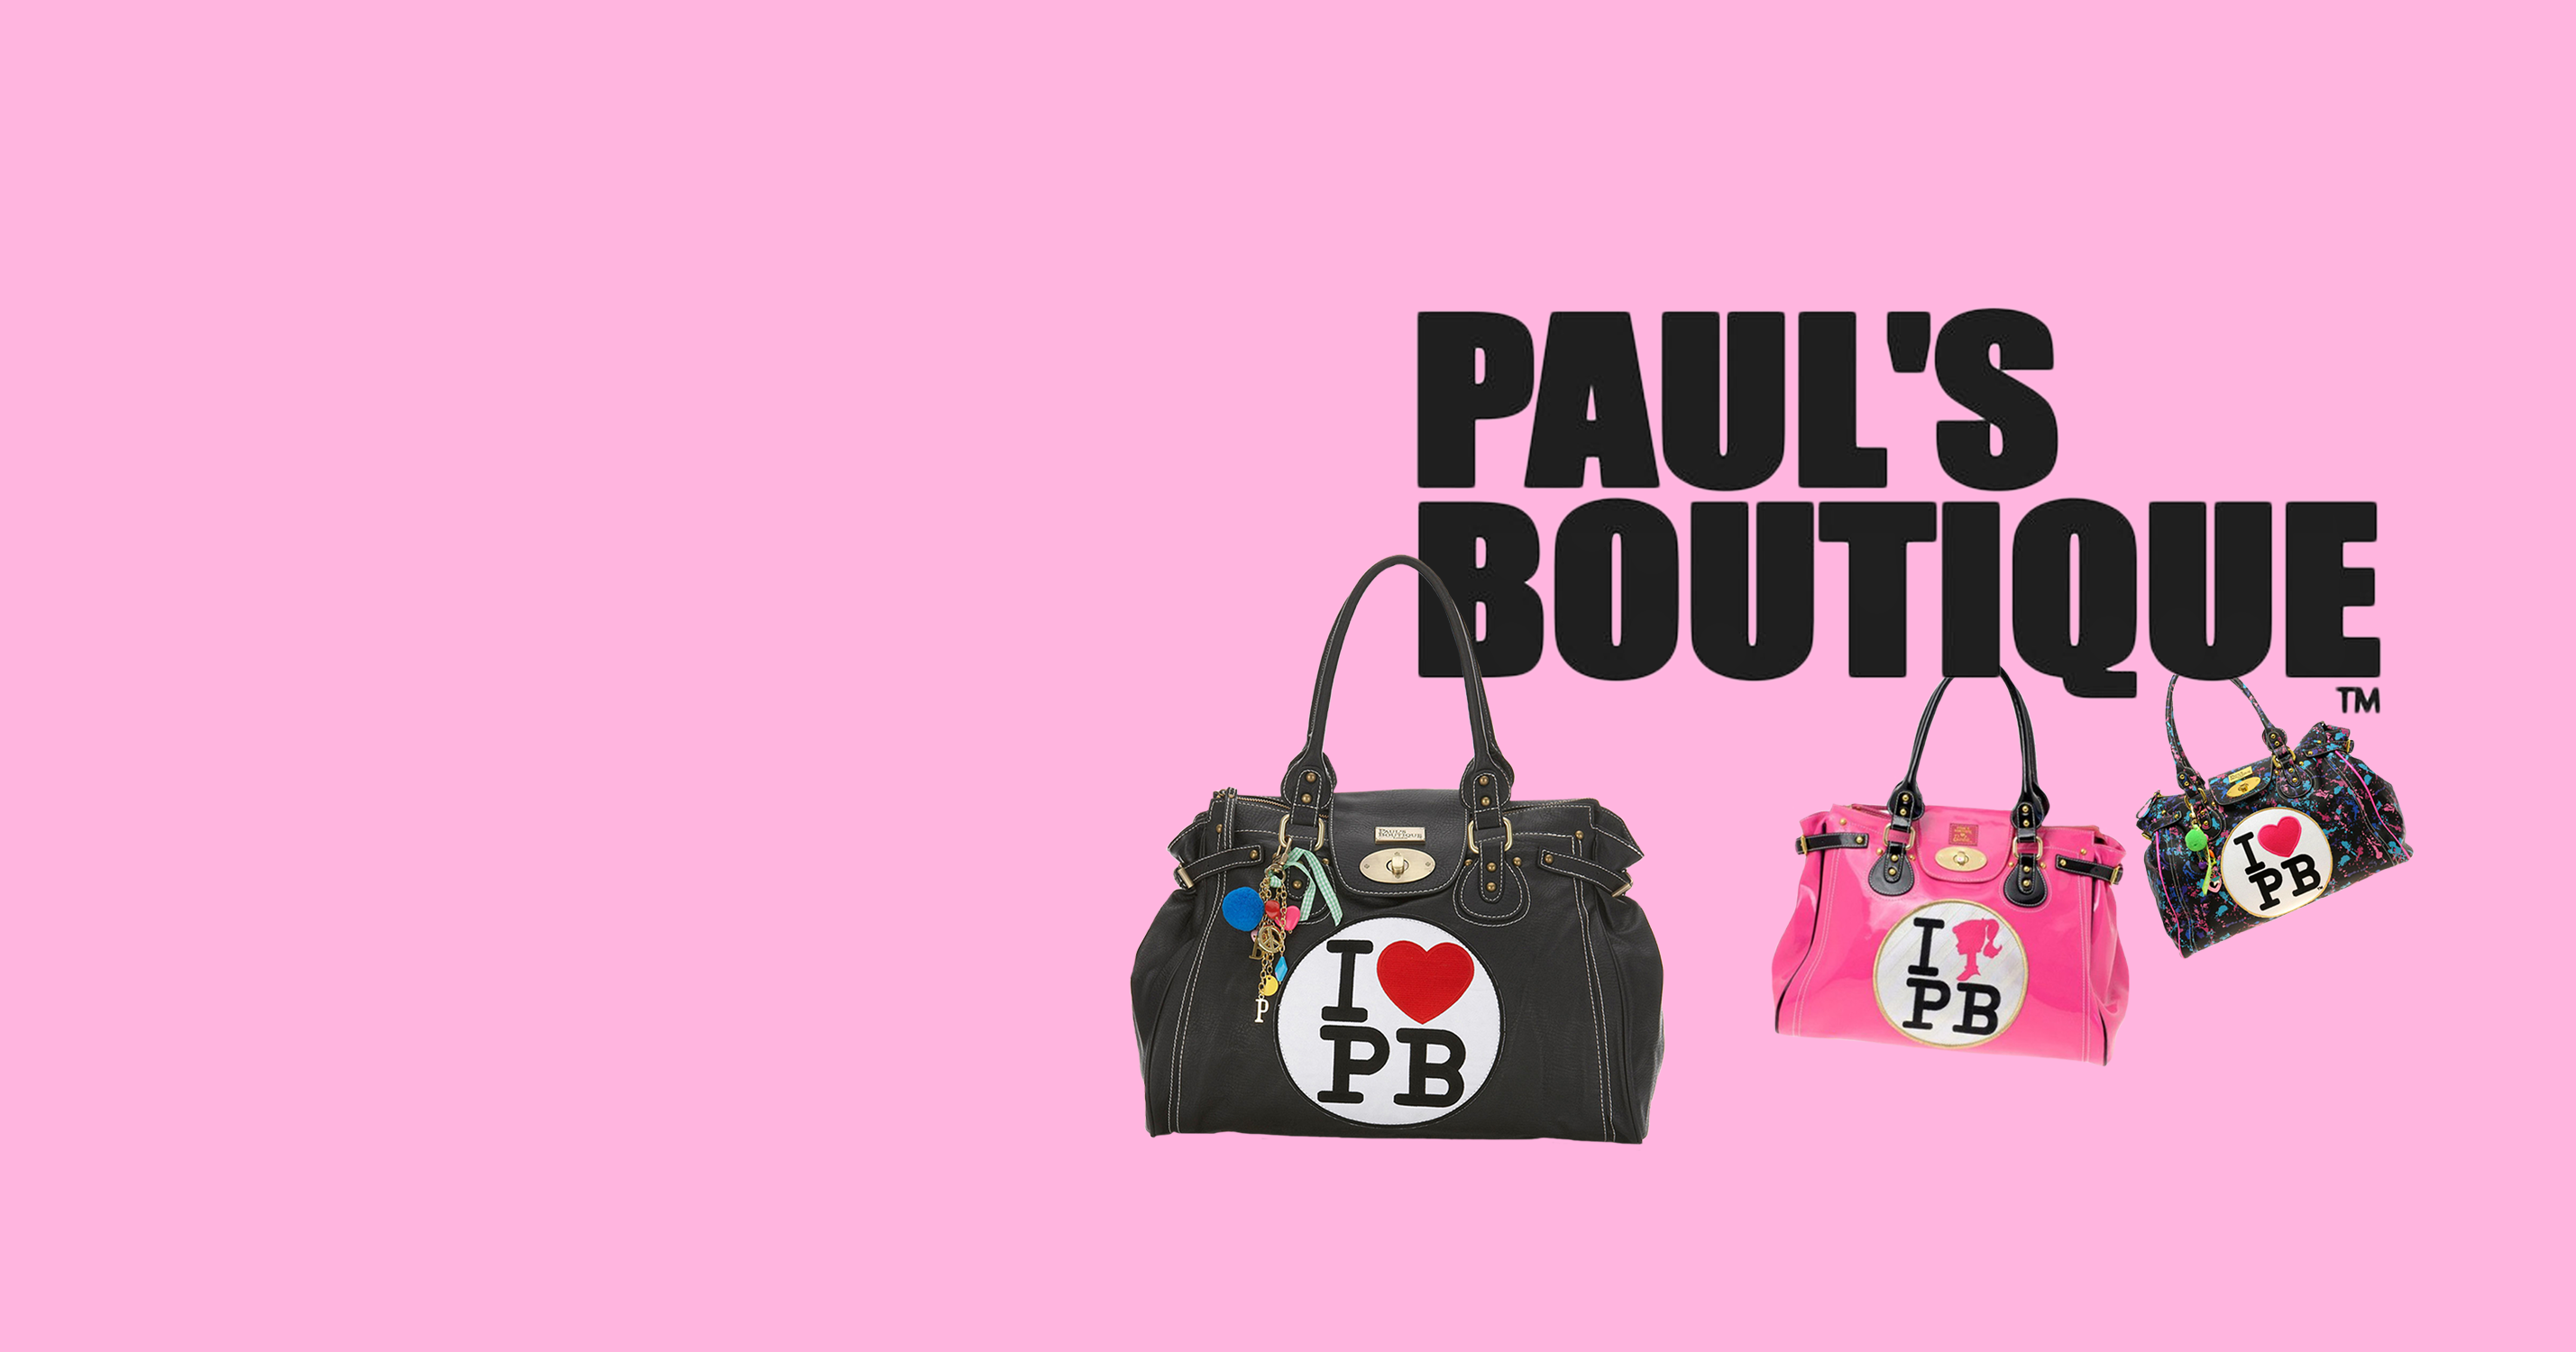 paul's Boutique, Bags, Pauls Boutique Shoulder Bag